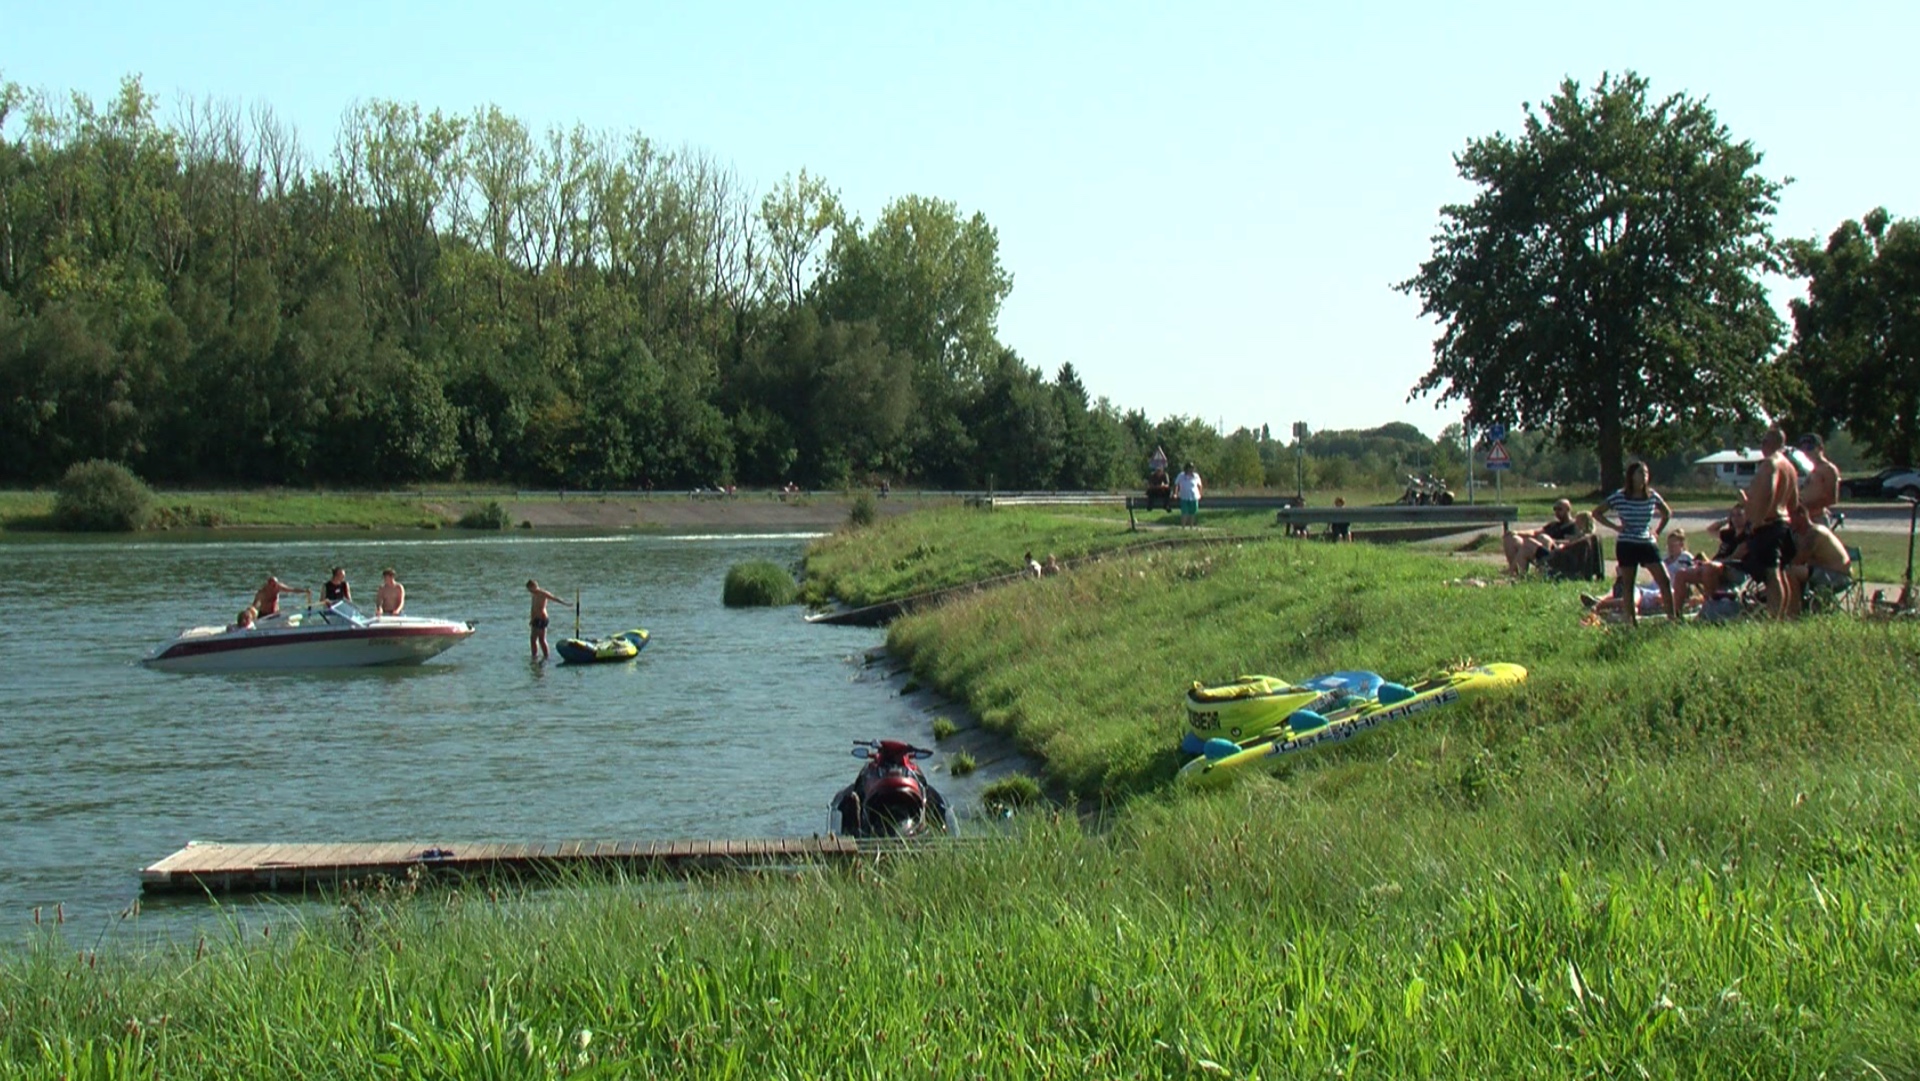 Baignade et pêche interdites depuis ce mardi tout le long du canal Nimy-Blaton-Péronnes